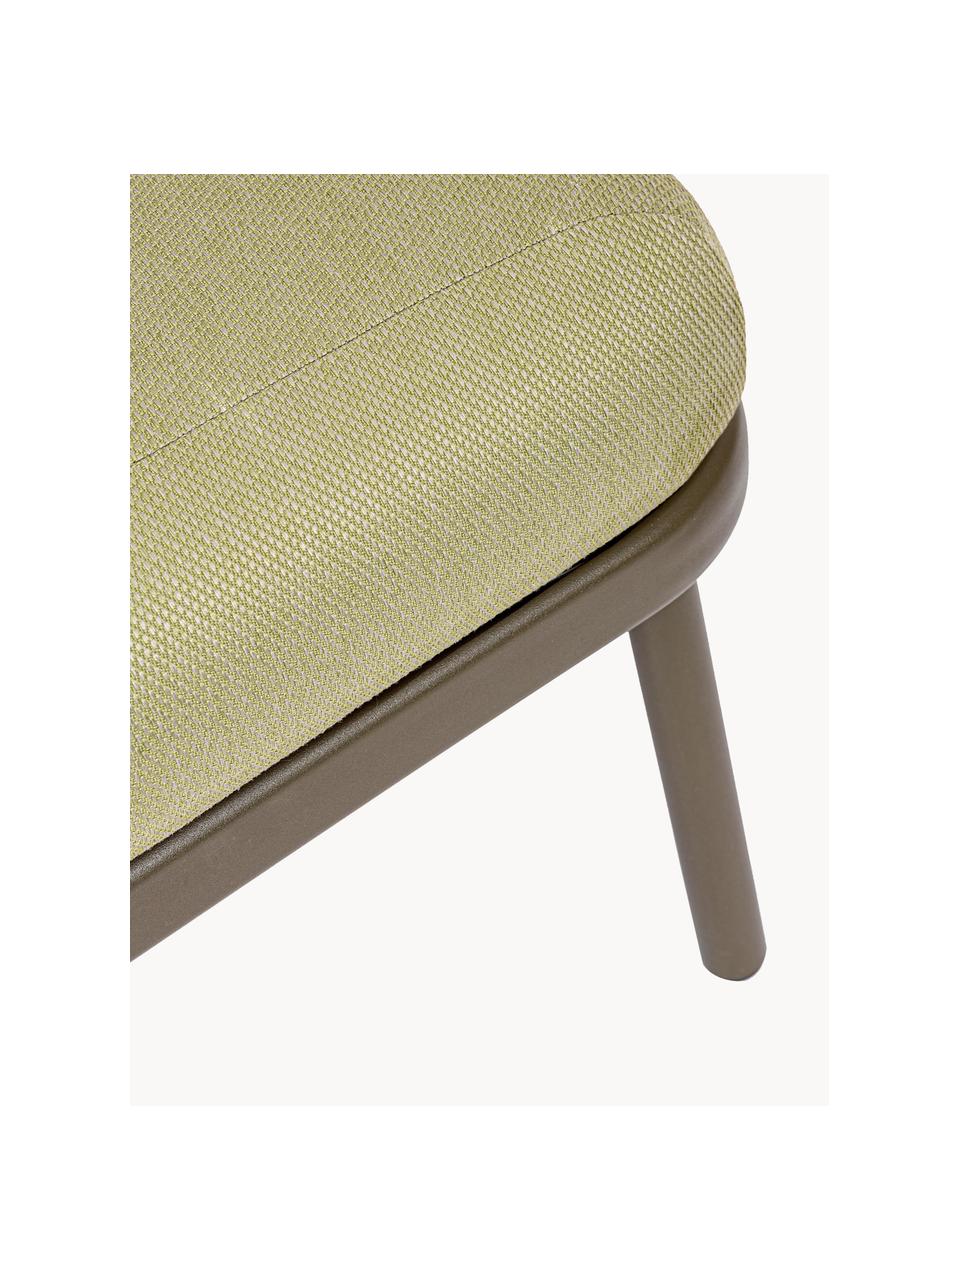 Sofa ogrodowa Harlow (2-osobowa), Tapicerka: 100% polipropylen, Stelaż: aluminium malowane proszk, Oliwkowozielona tkanina, taupe, S 165 x G 77 cm